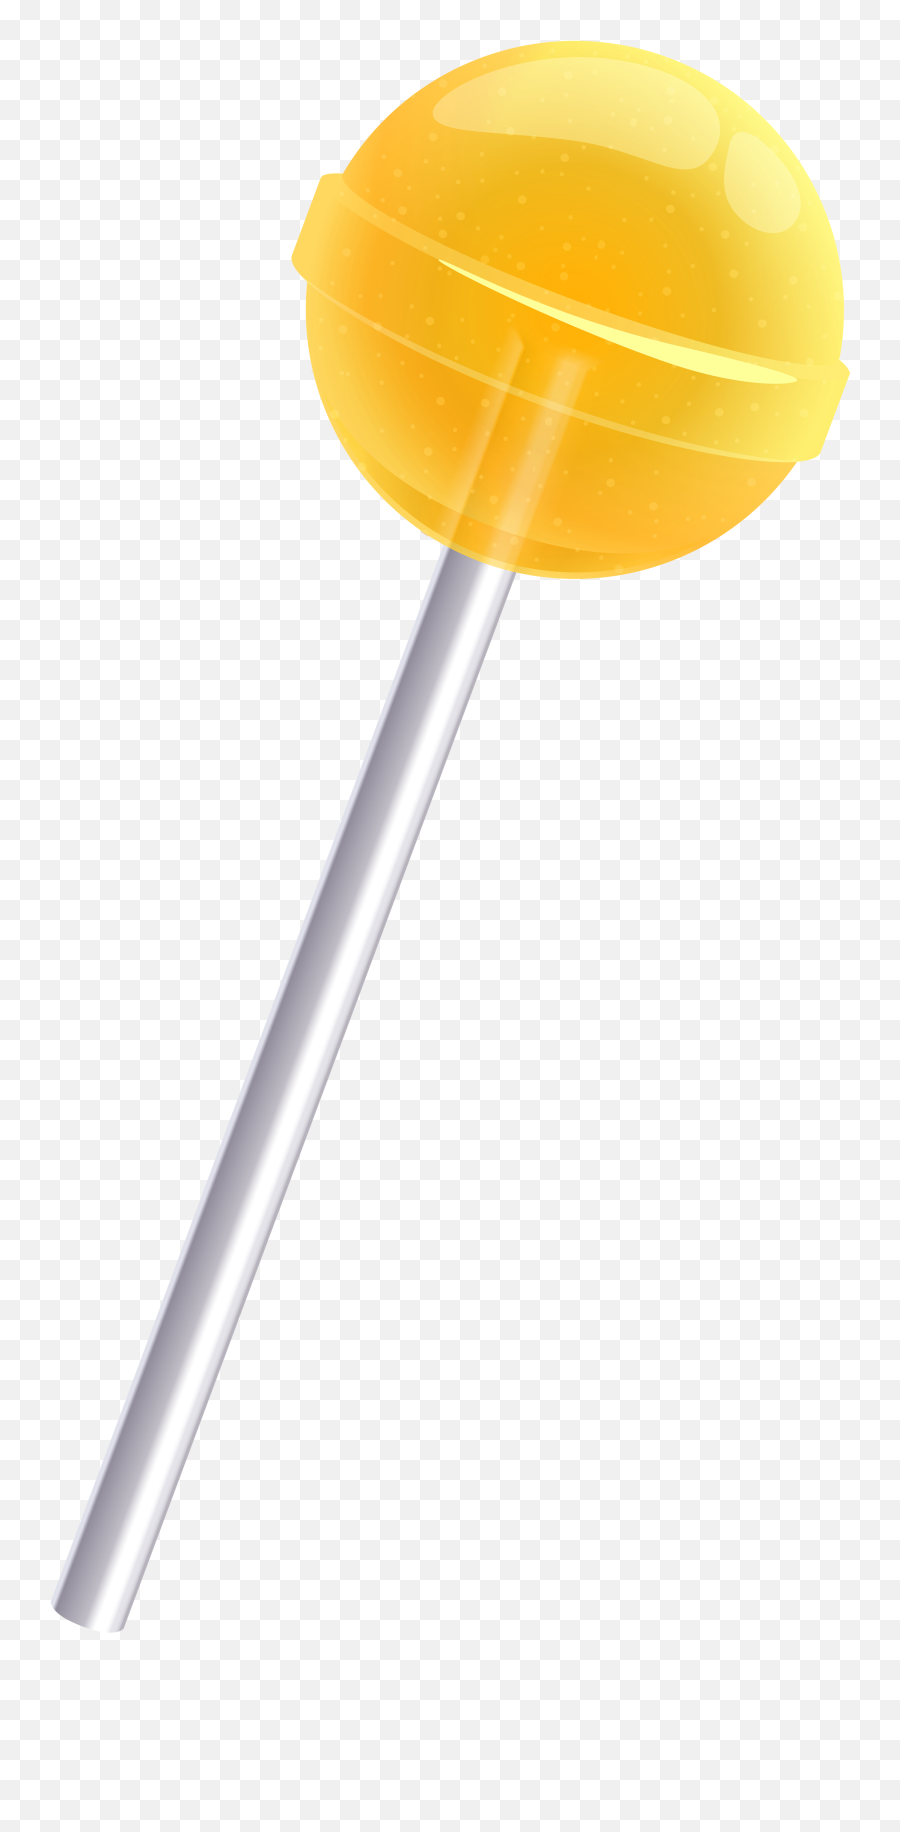 Lollipop Png Image - Lollipop Png,Lolipop Png